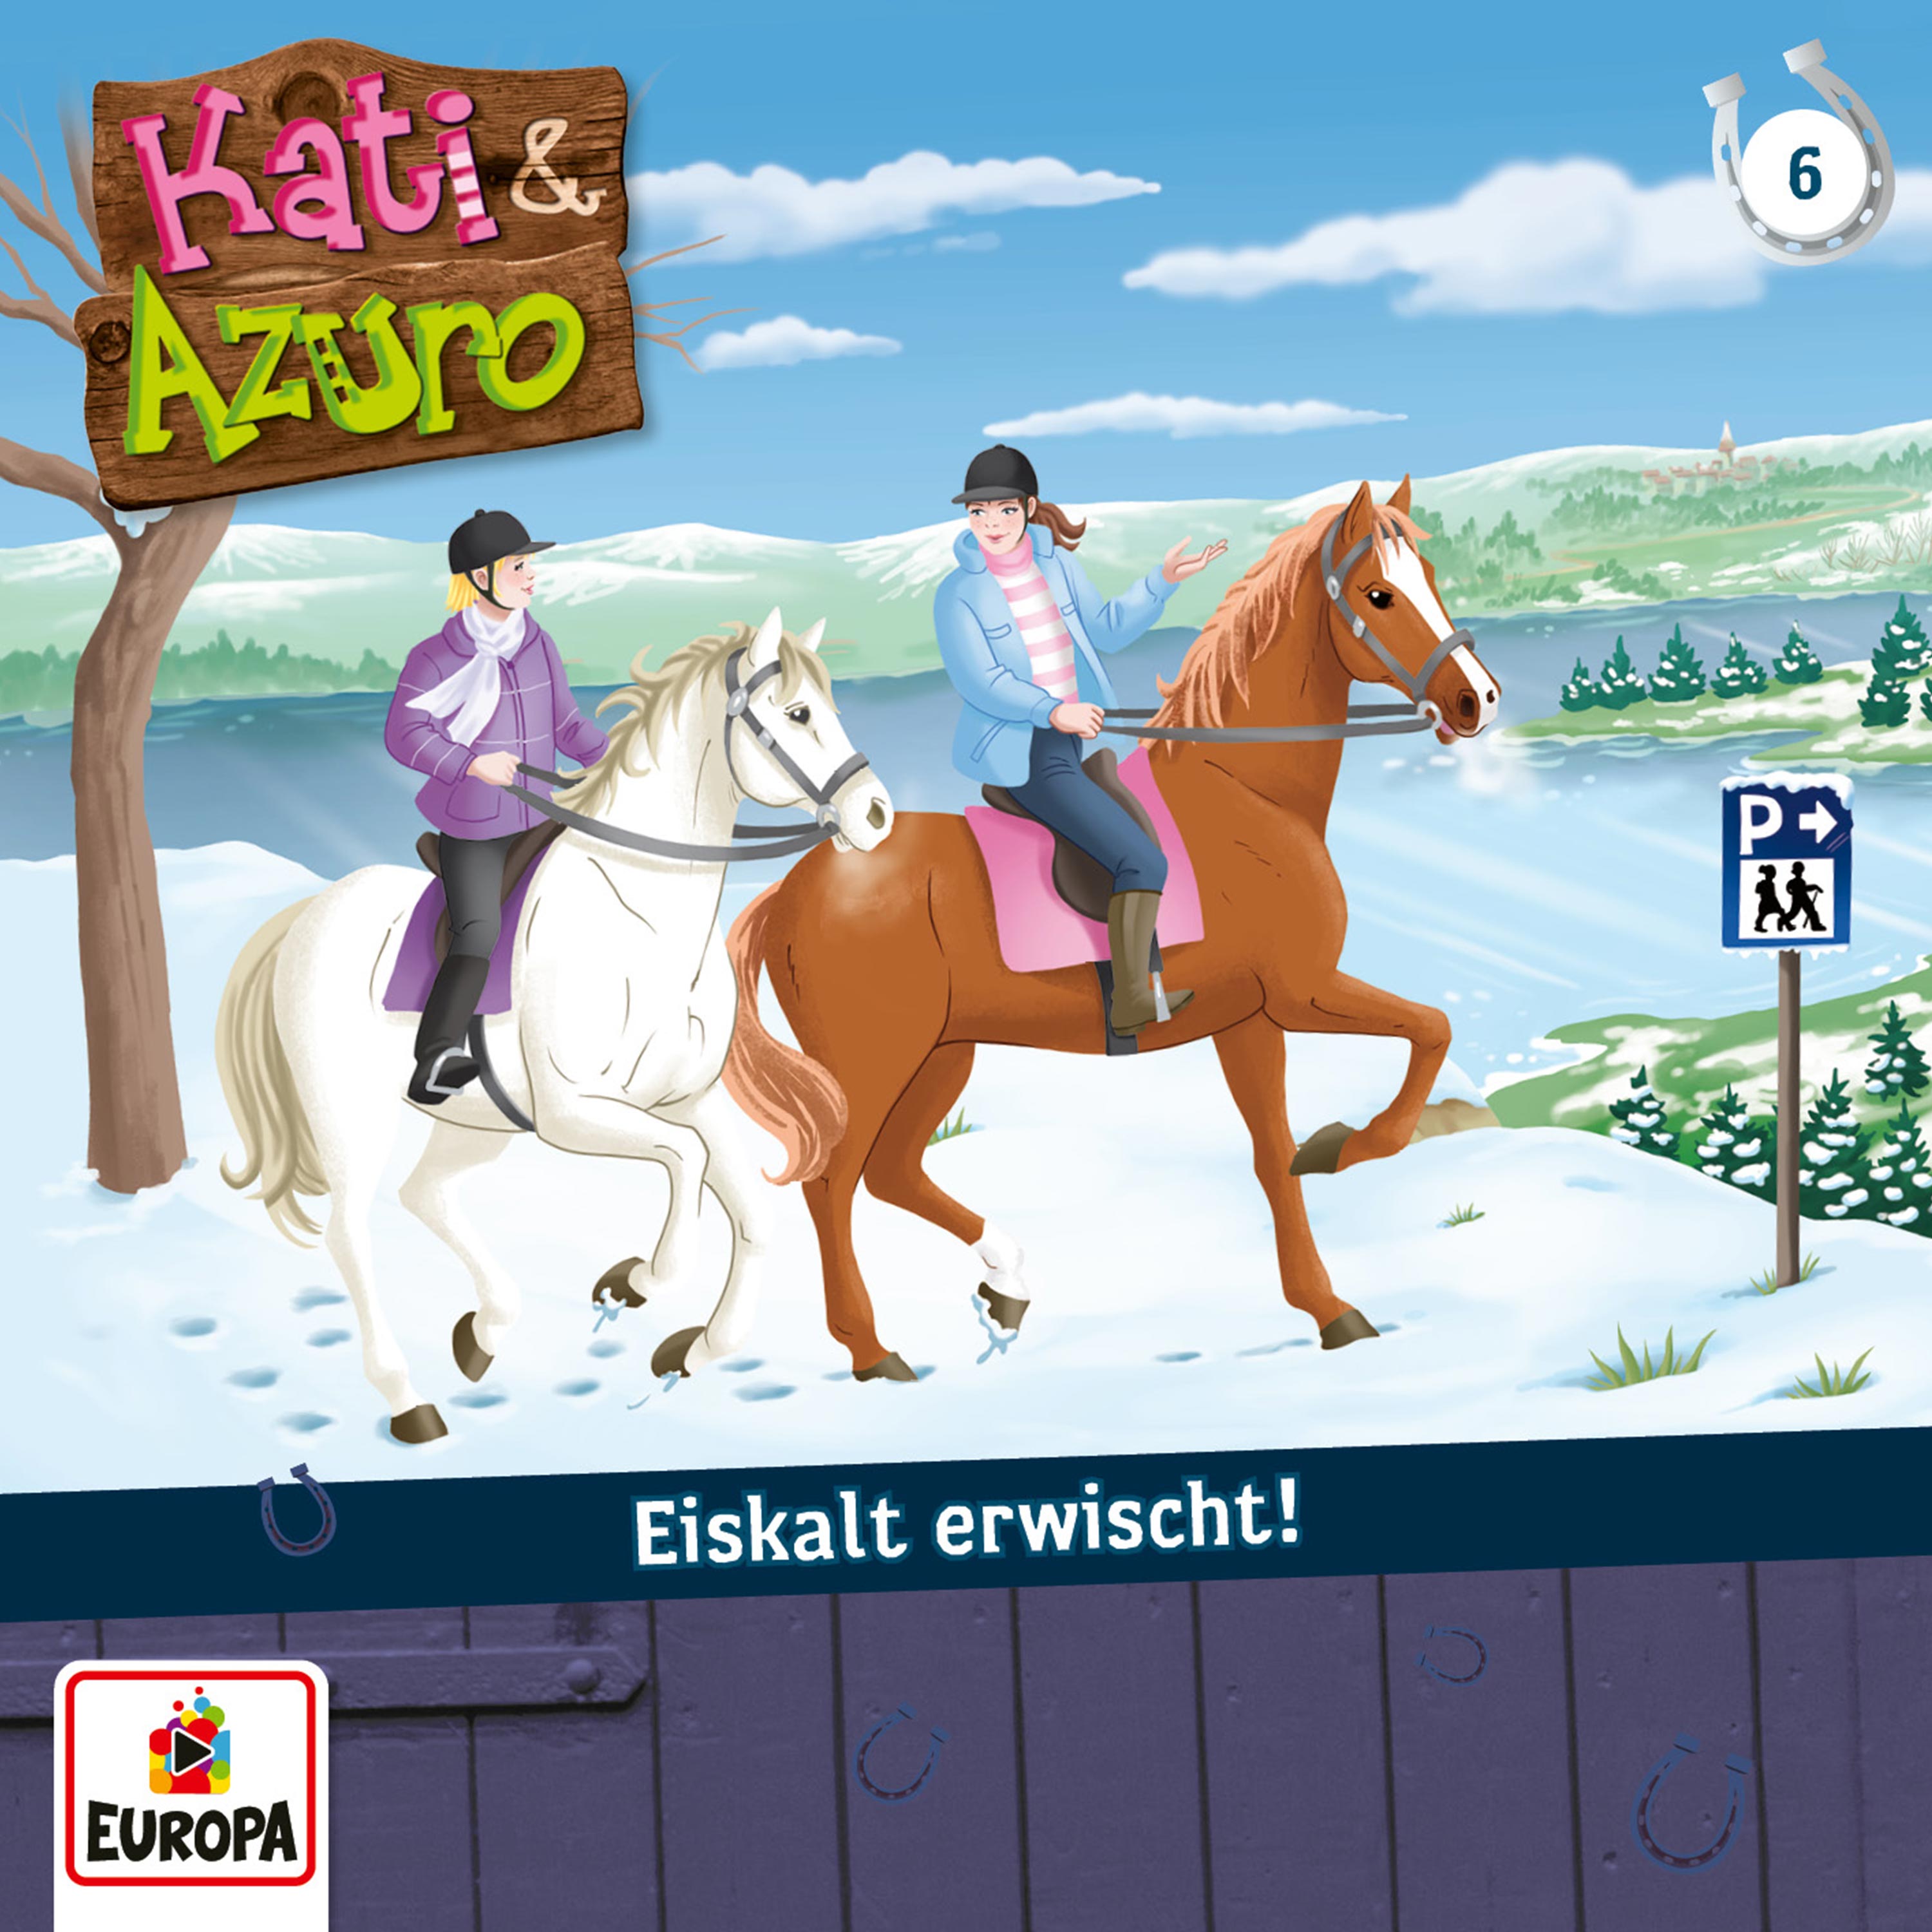 Kati & Azuro: Eiskalt erwischt!